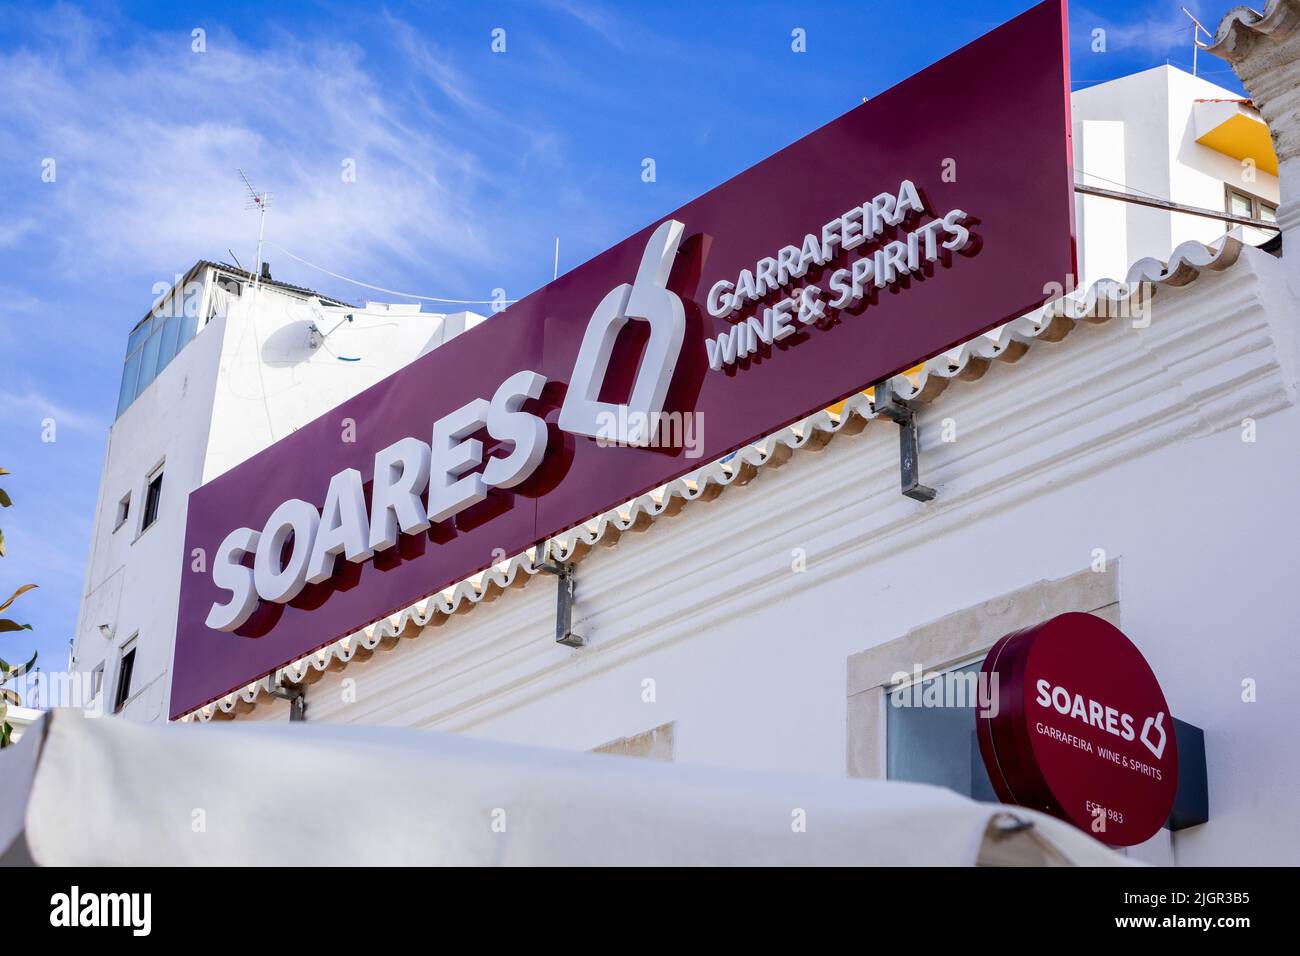 Soares Wein- Und Spirituosengeschäft Anmelden Albufeira Altstadt Algarve Portugal Portugiesischer Weinhändler Aus Lizenz Stockfoto